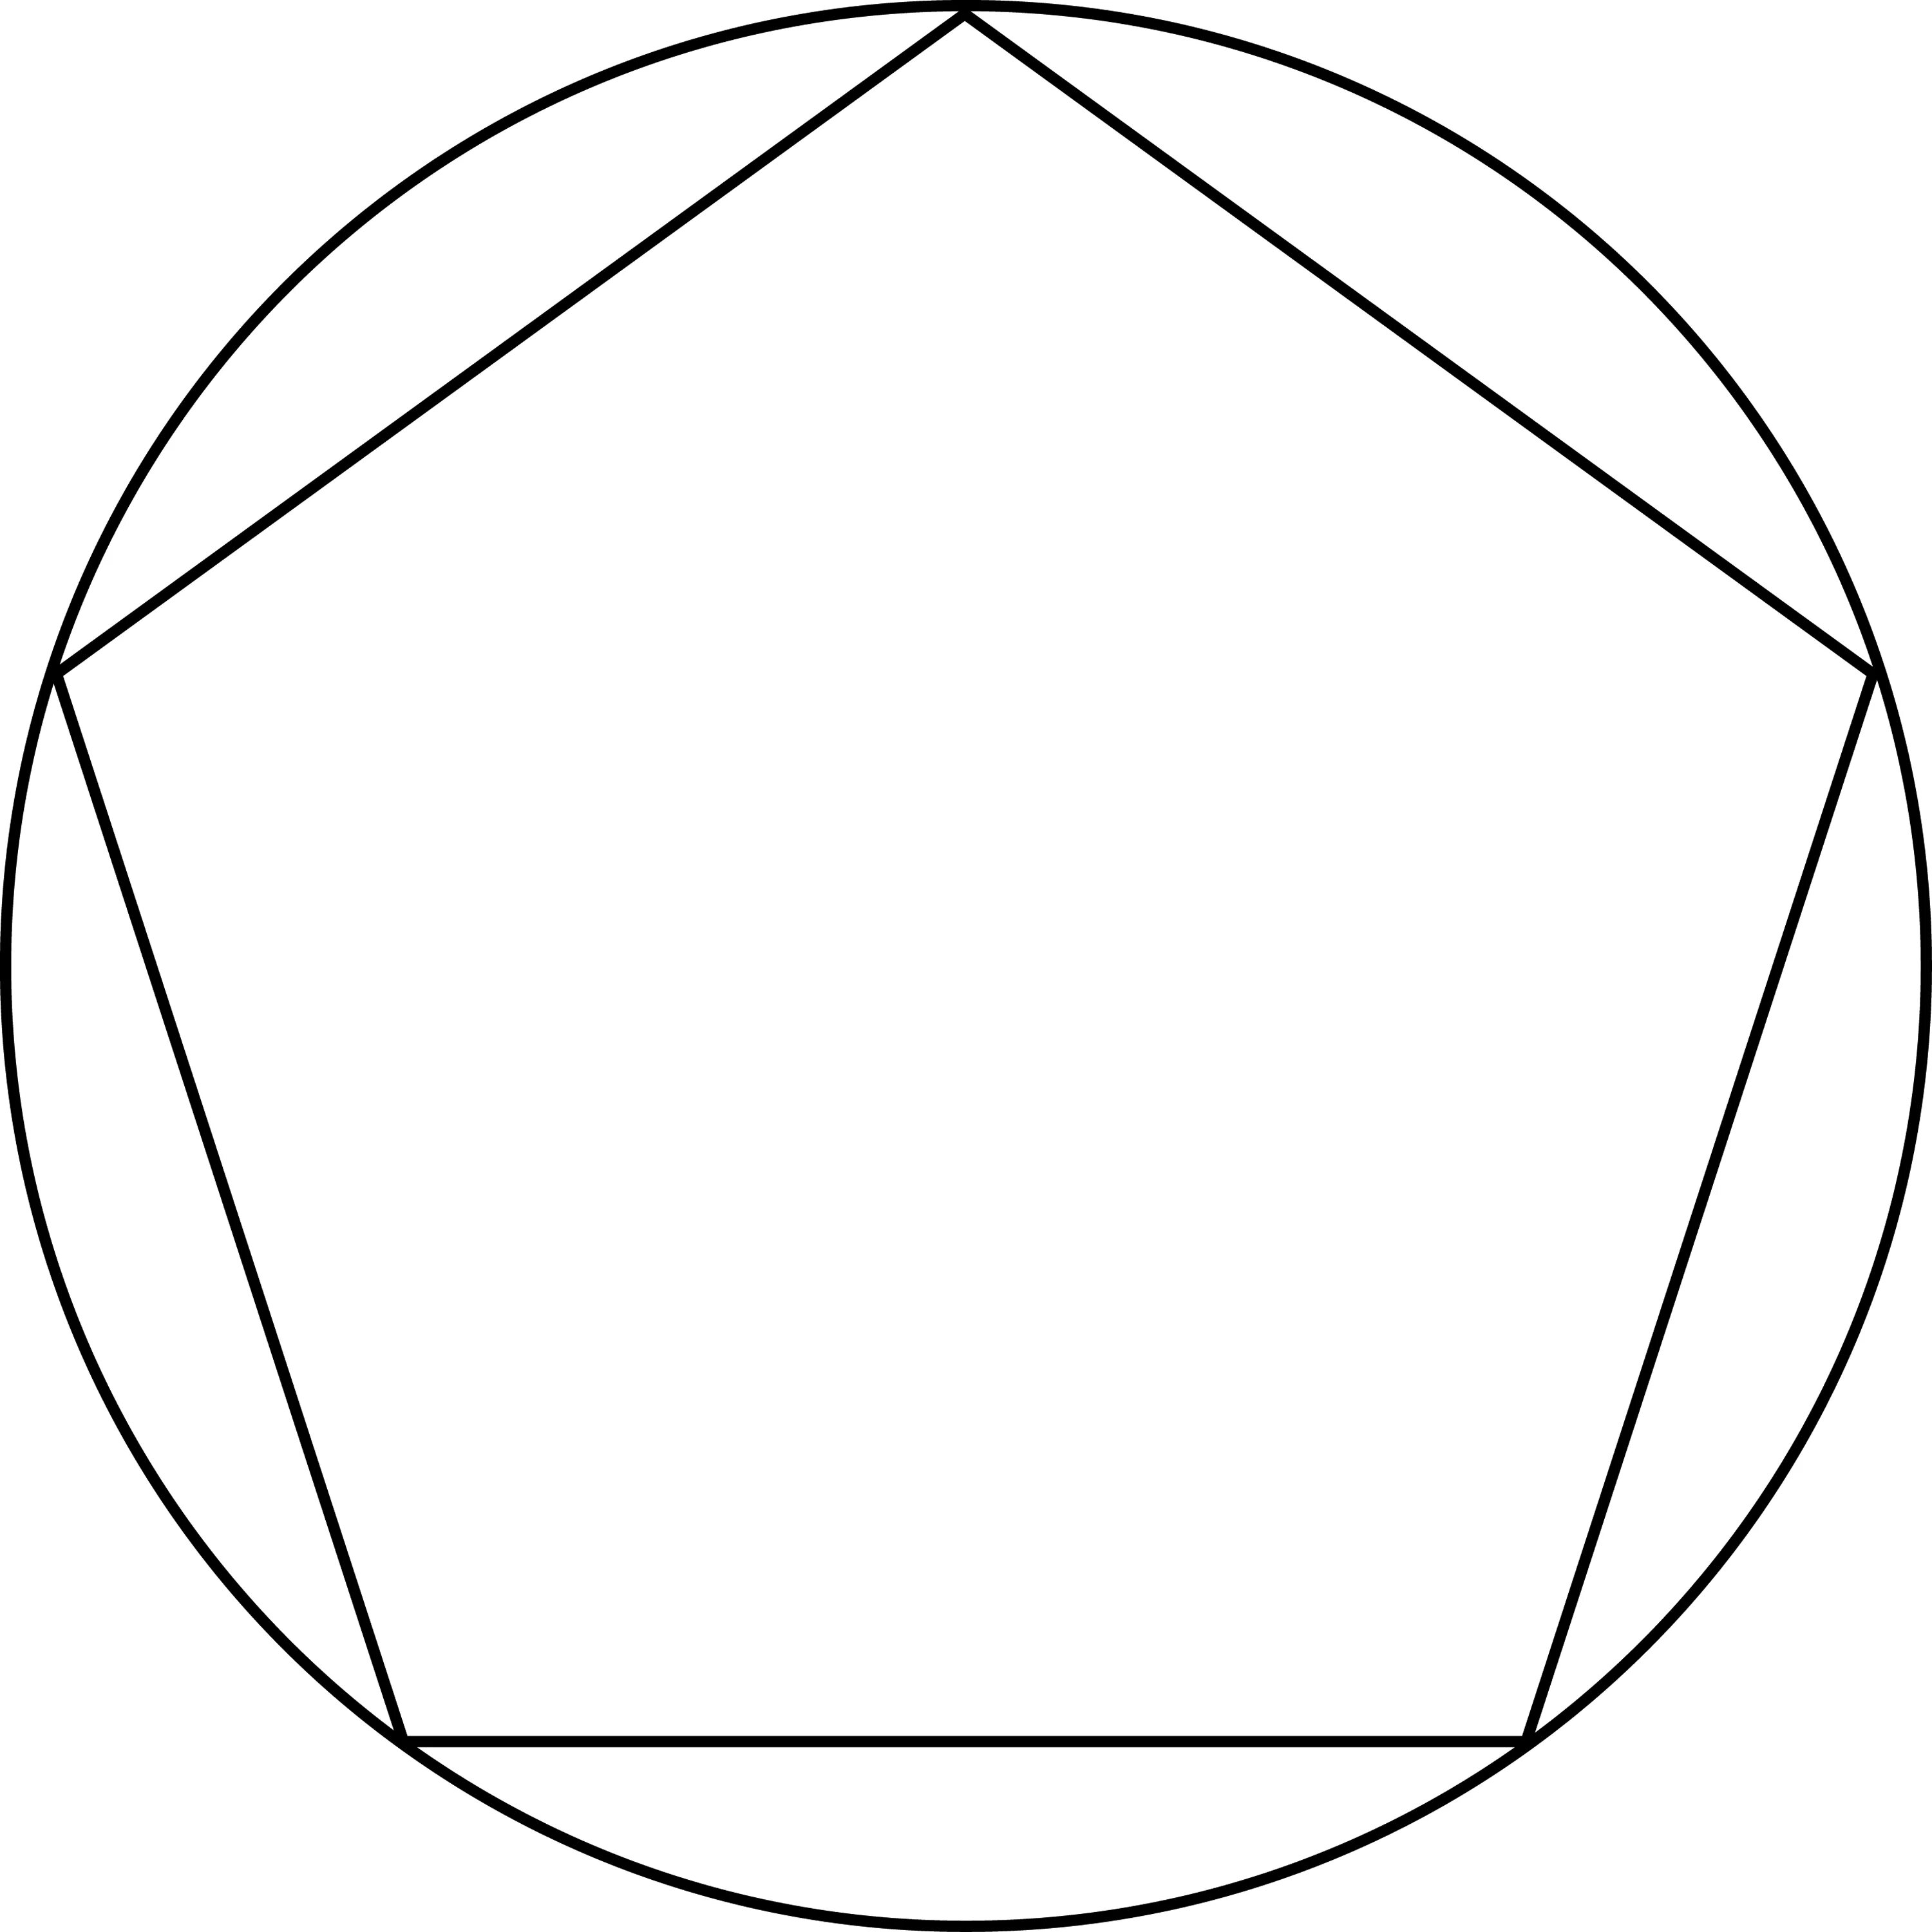 Круг правильная форма. Правельныйпятиугольник вптсннный в окружеость. Описанная окружность пятиугольника. Правильный пятиугольник вписанный в окружность. Вписать пятиугольник в круг.